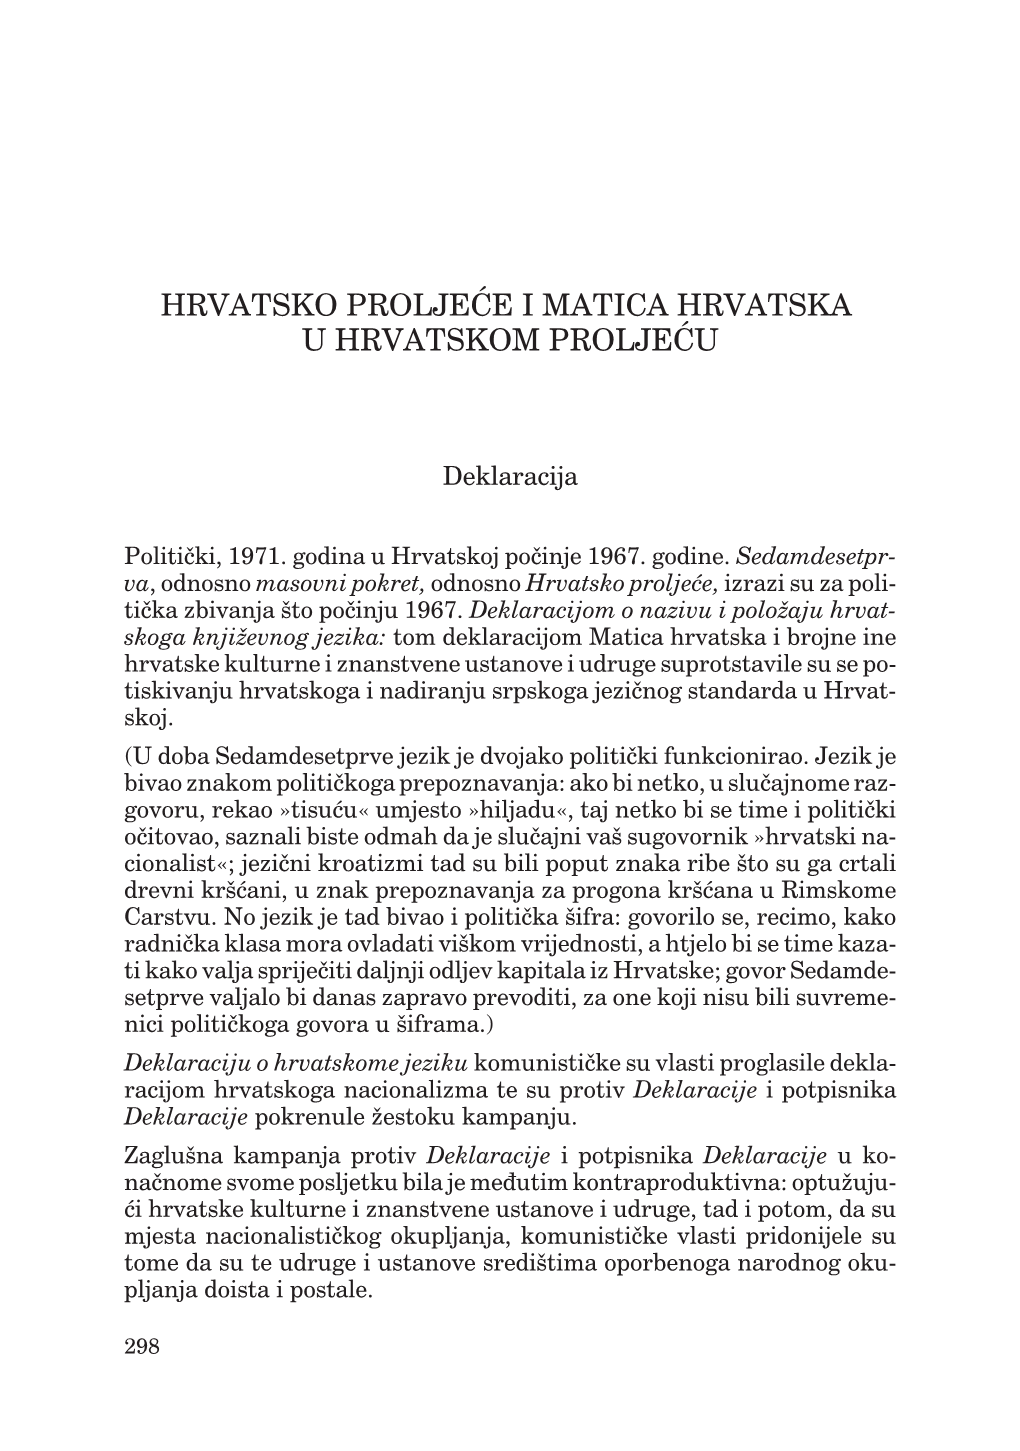 Hrvatsko Proljeće I Matica Hrvatska U Hrvatskom Proljeću (149,9